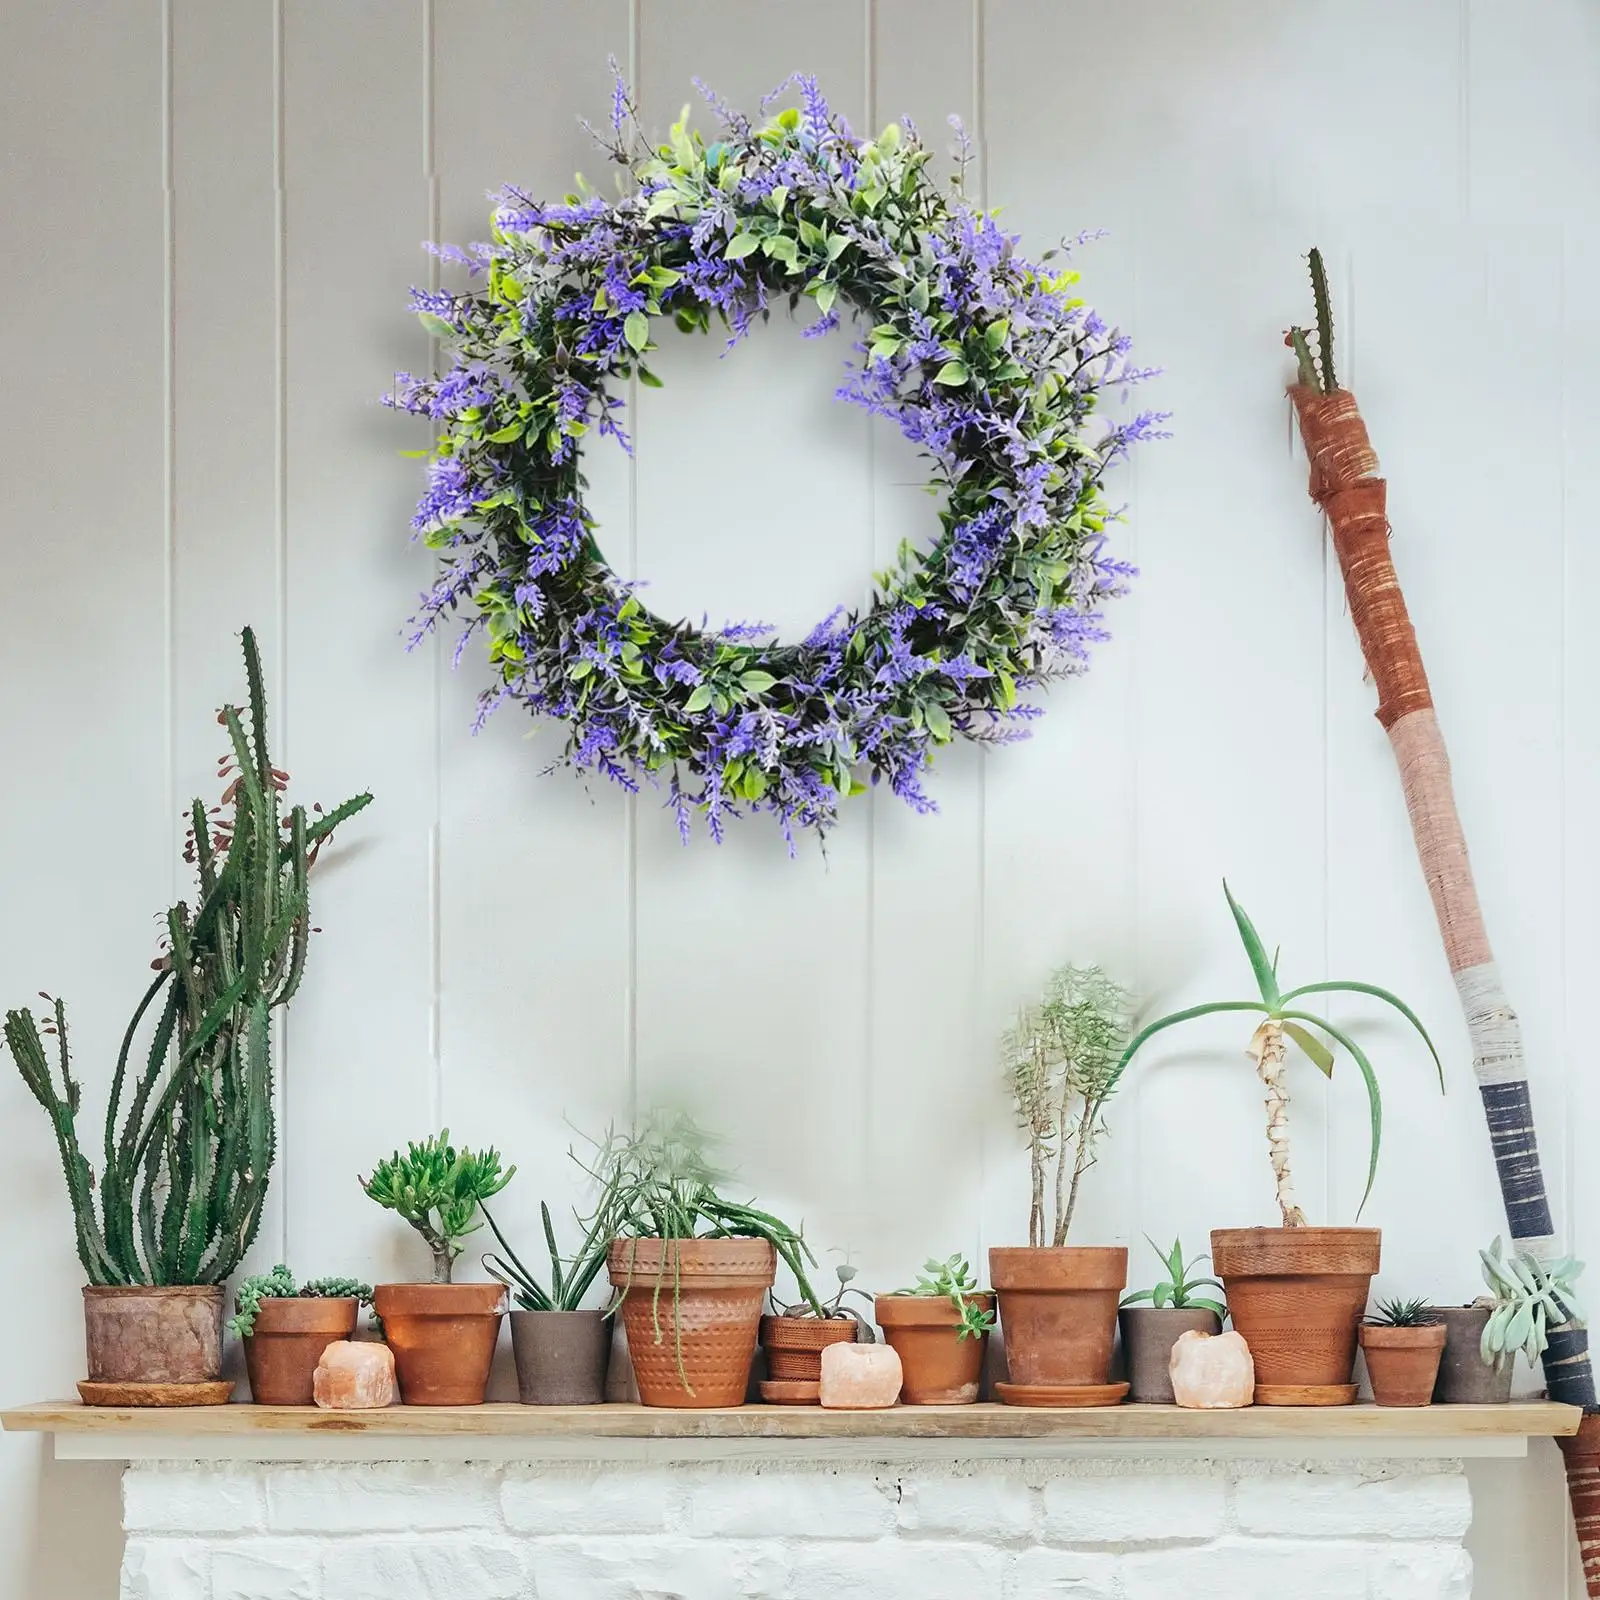 17`` Door Wreath Hanging Lavender for Front Door Party Silk Flower Garland